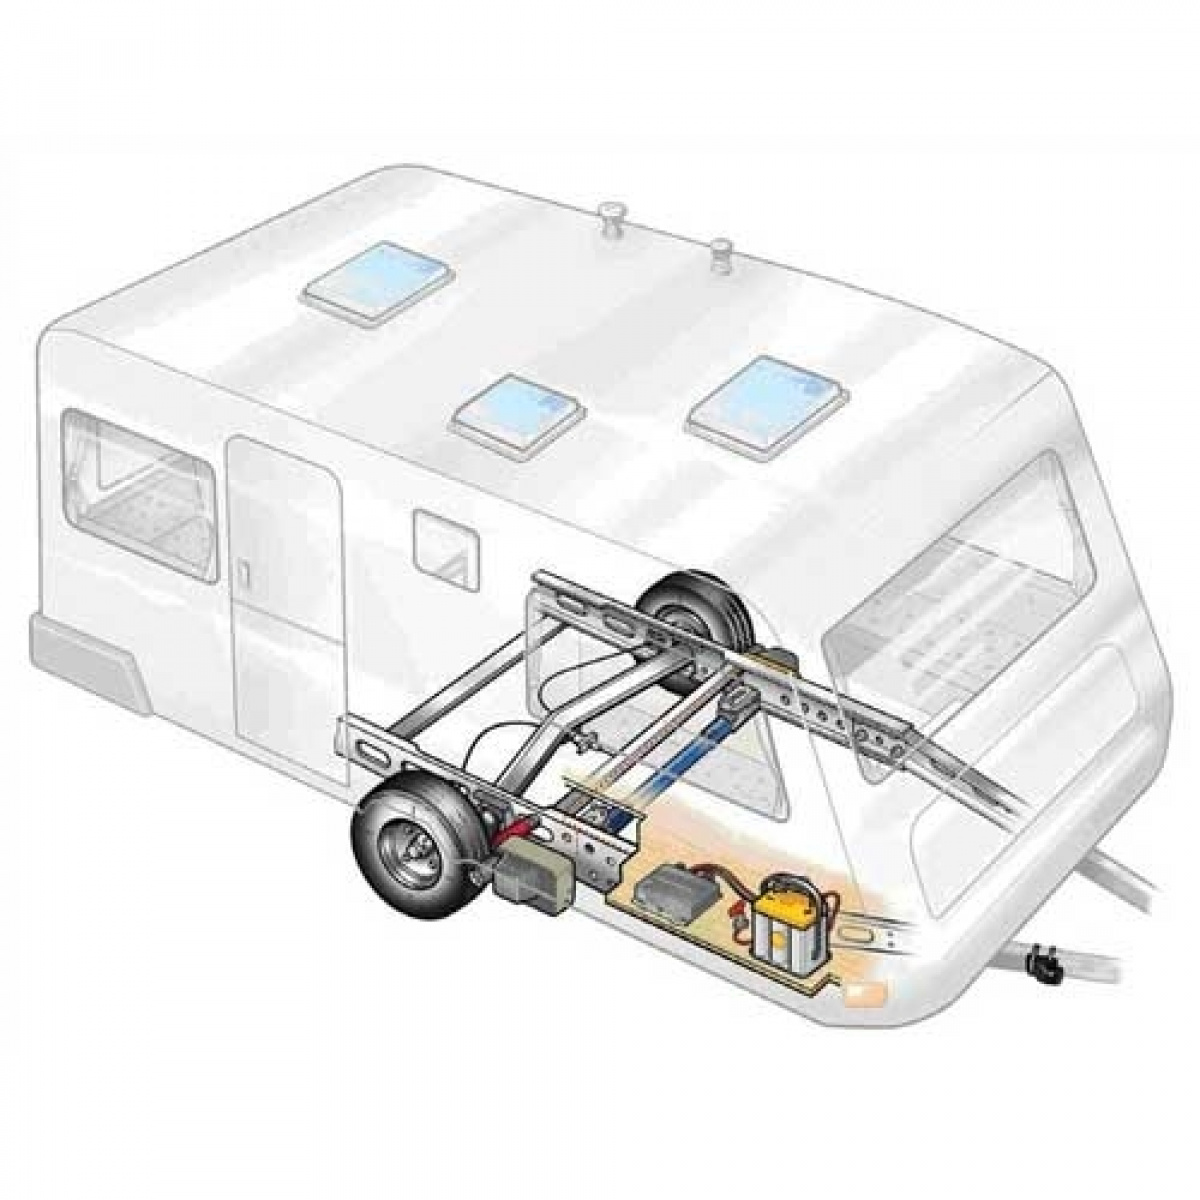 Truma Mover XT L til letvægts AL-KO chassis i gruppen Campingvogn og autocamper / Chassis / Movers/Koblingshjælp / Movers hos Campmarket (65892)